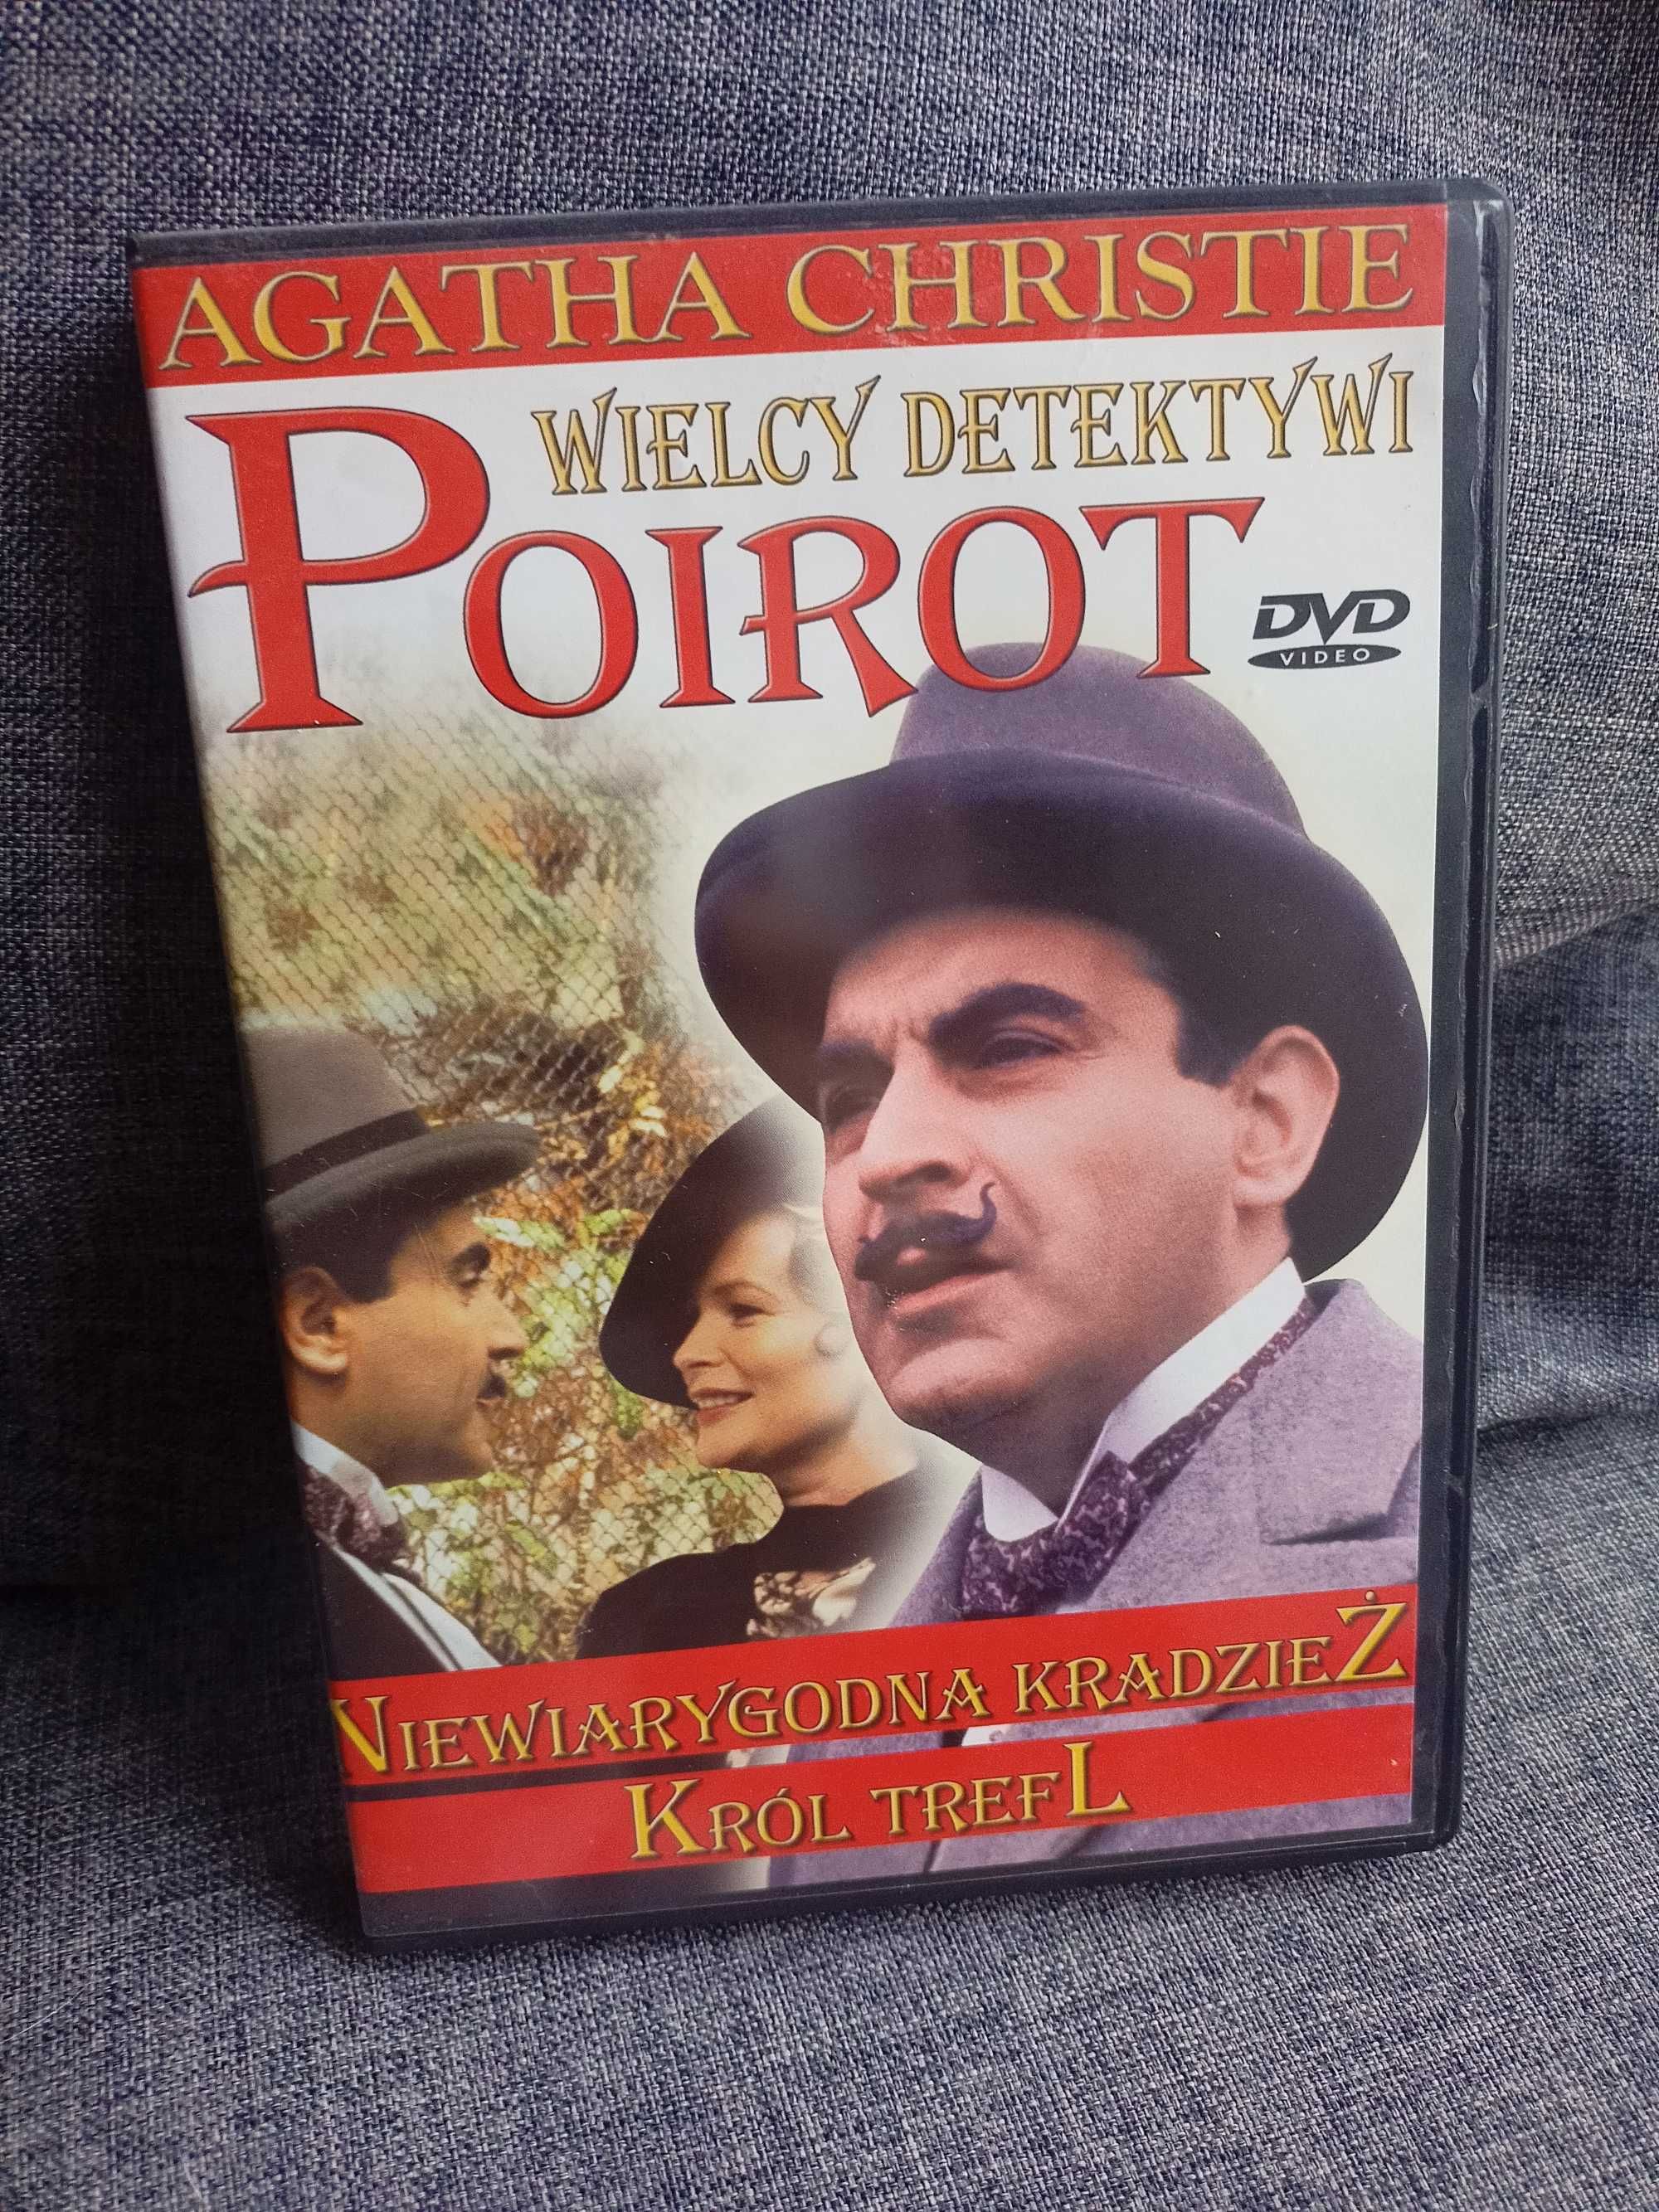 DVD Poirot 6. Niewiarygodna kradzież. Król trefl